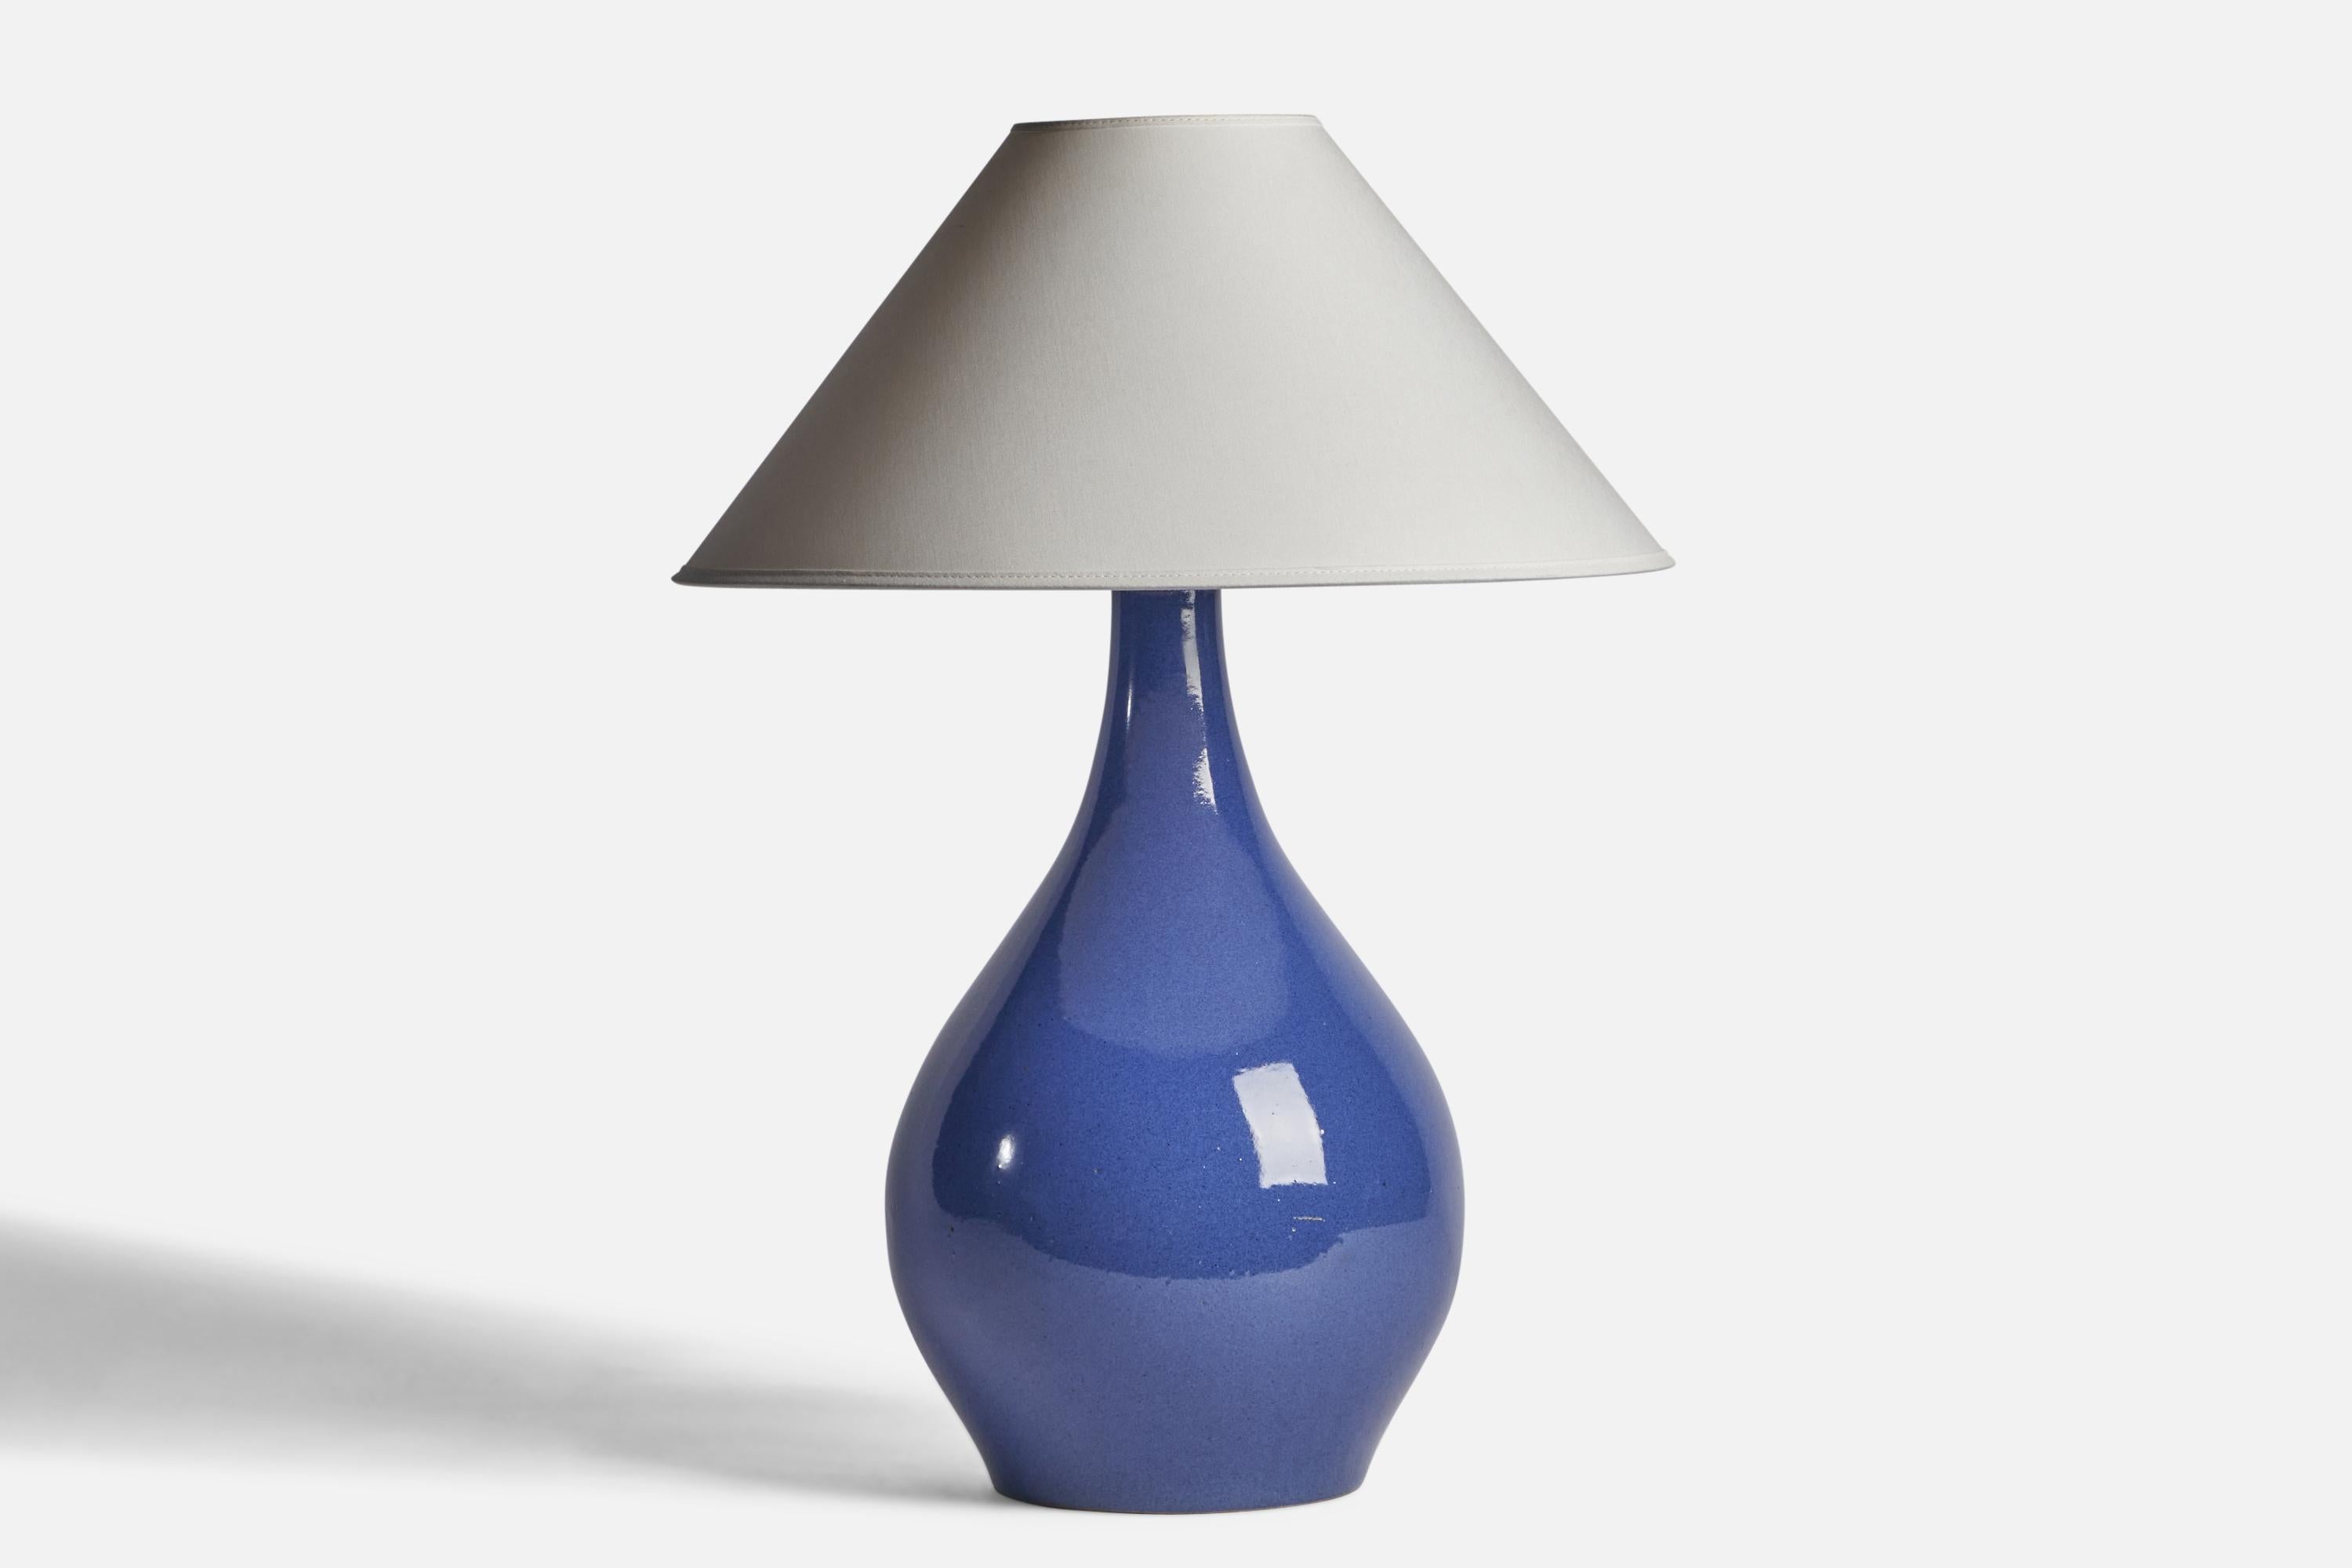 Lampe de table en céramique émaillée bleue conçue par Jane & Gordon Martz et produite par Marshall Studios, États-Unis, années 1960.

Dimensions de la lampe (pouces) : 17.75